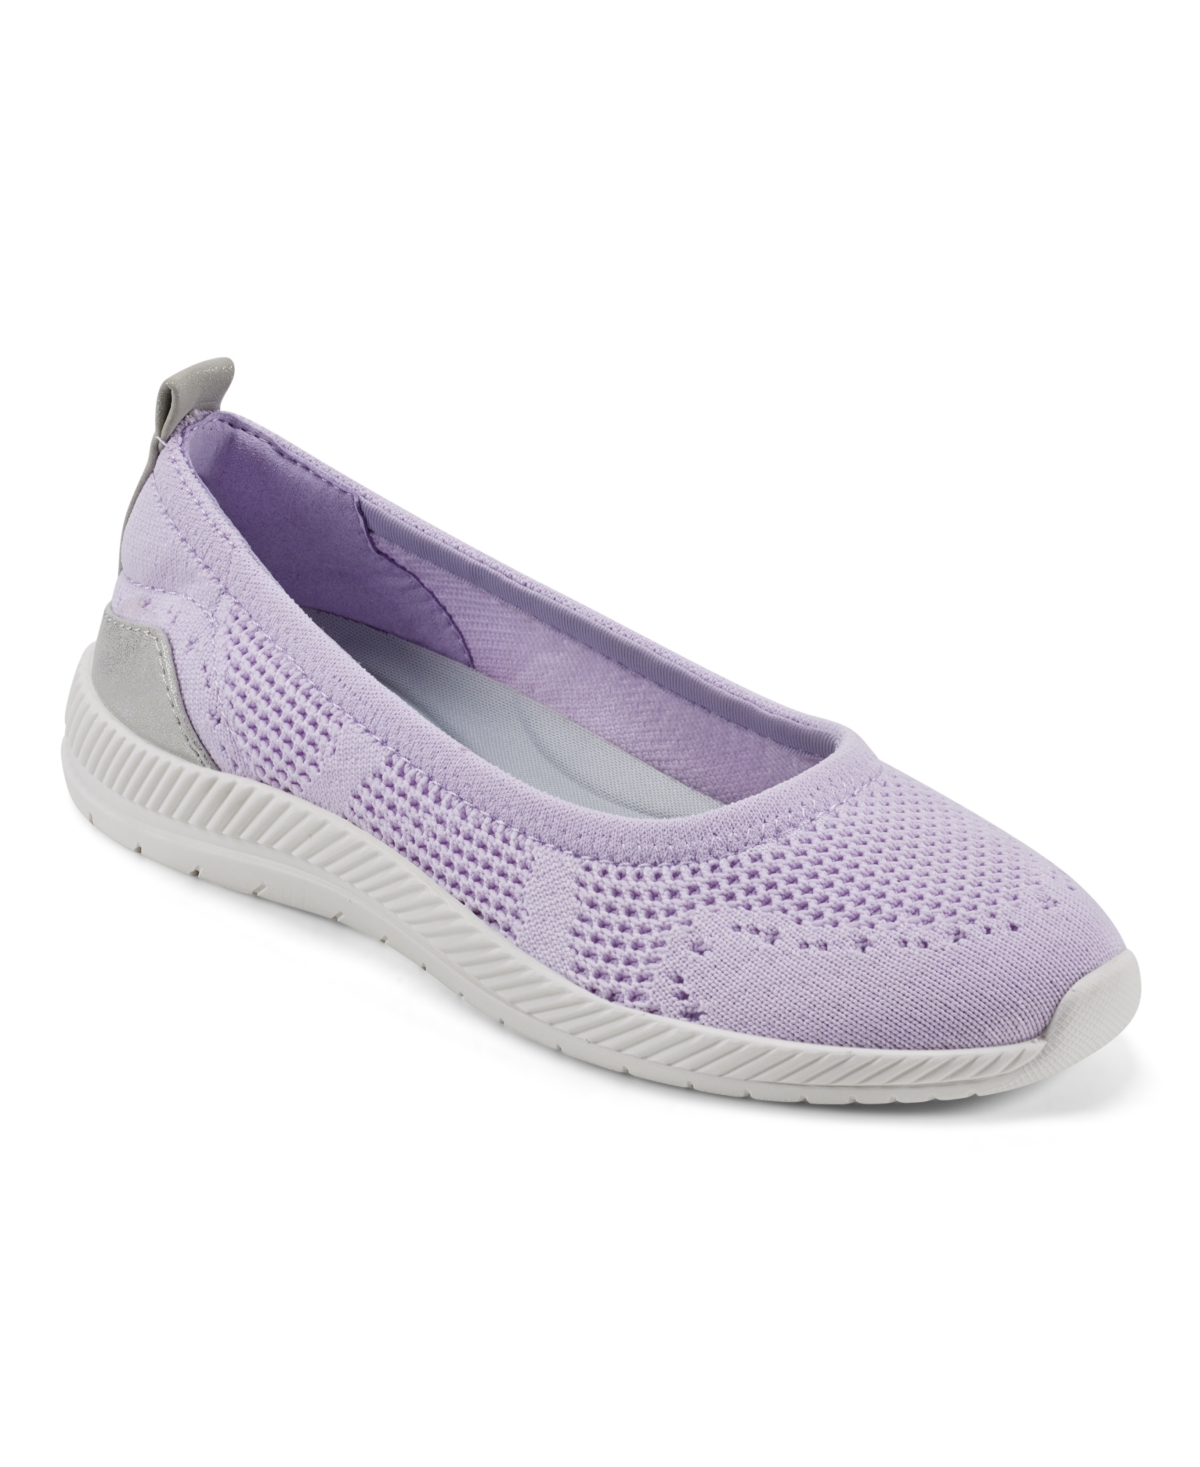 Women's Glitz Casual Slip-On Walking Shoes - Light Purple